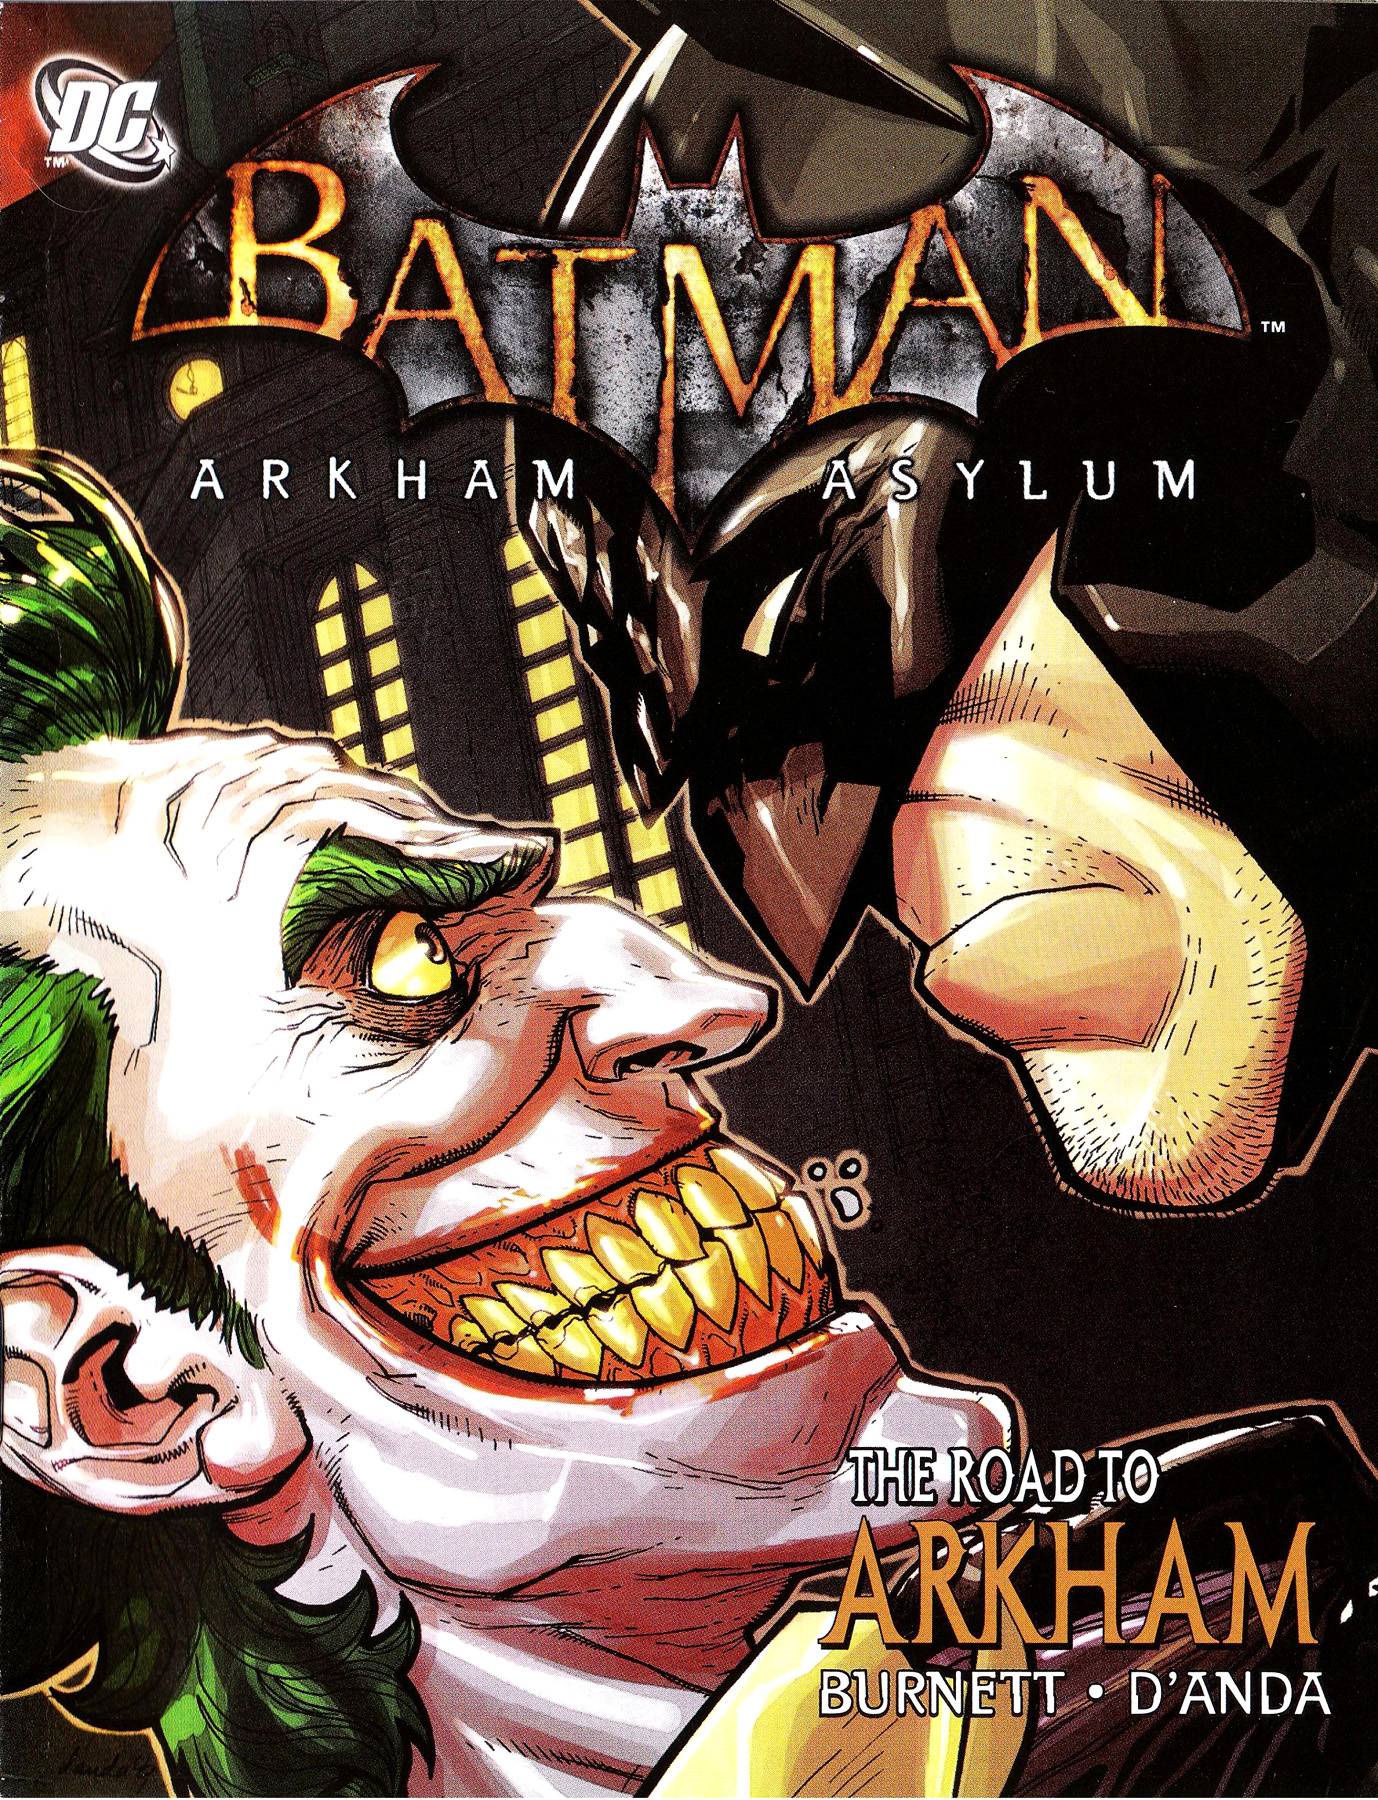 Бэтмен: Лечебница Аркхэм - Дорога в Аркхэм онлайн